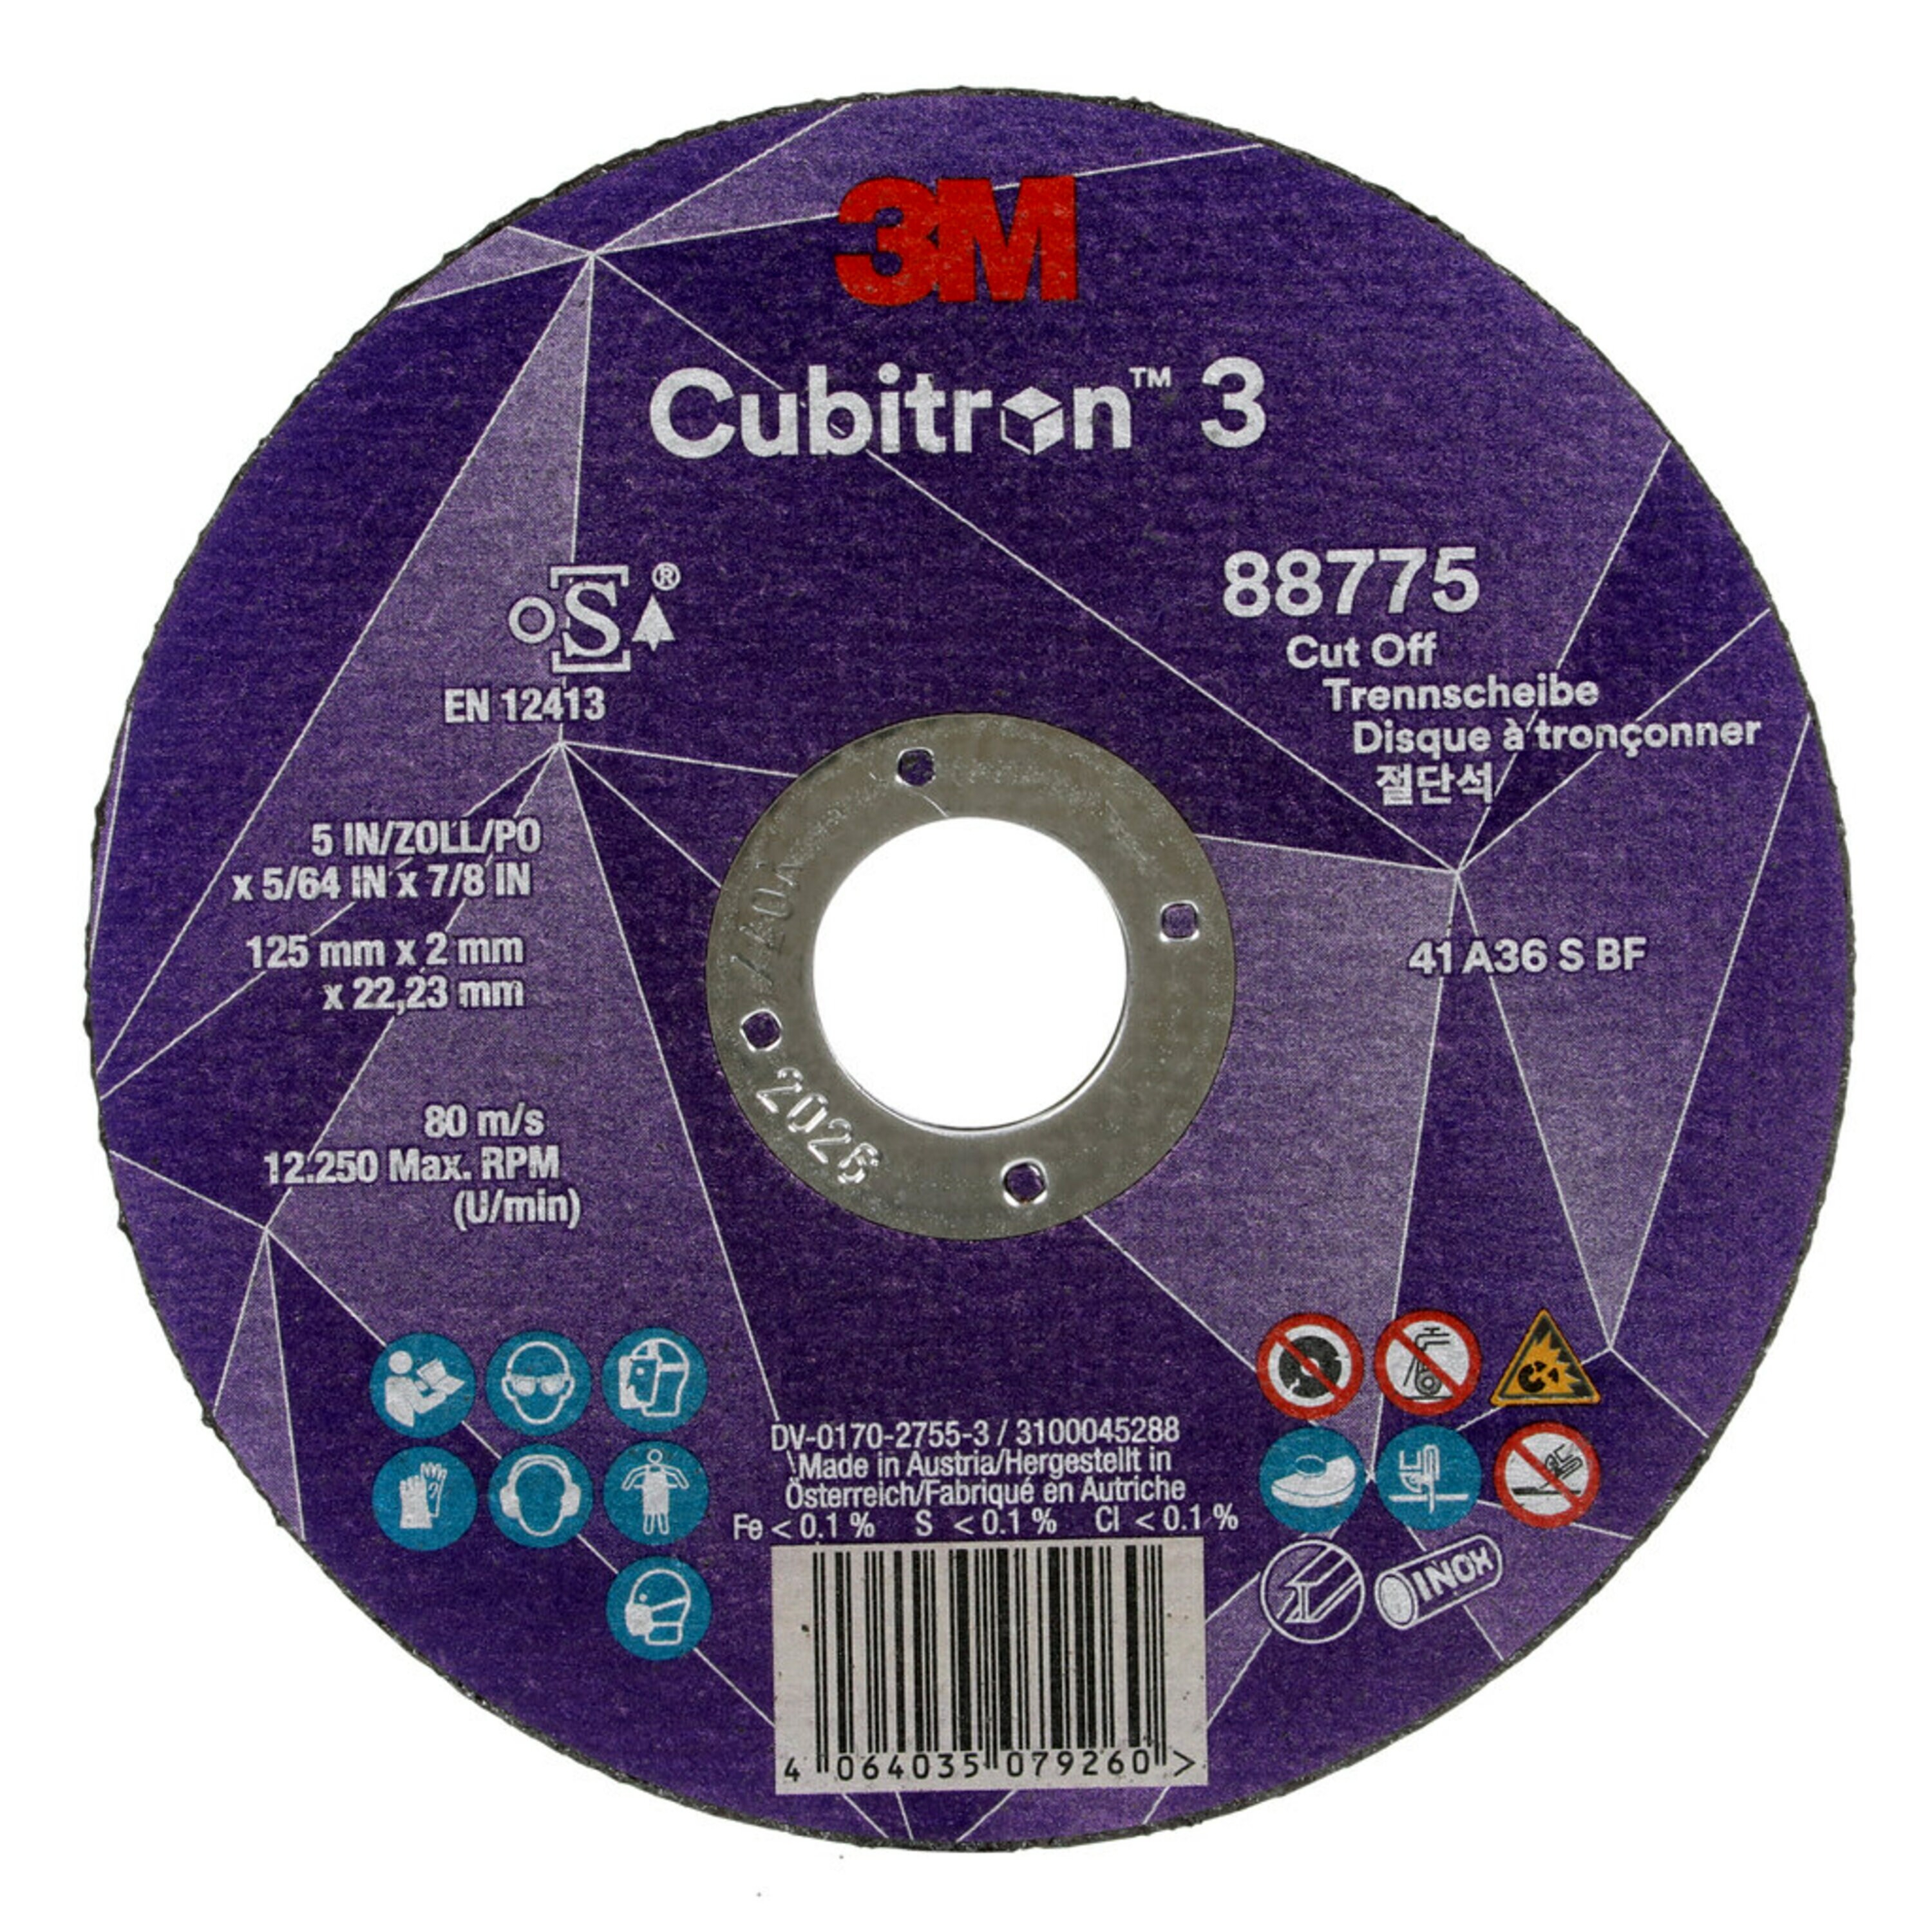 3M Cubitron 3 disco da taglio, 125 mm, 2 mm, 22,23 mm, 36 , tipo 41 #88775